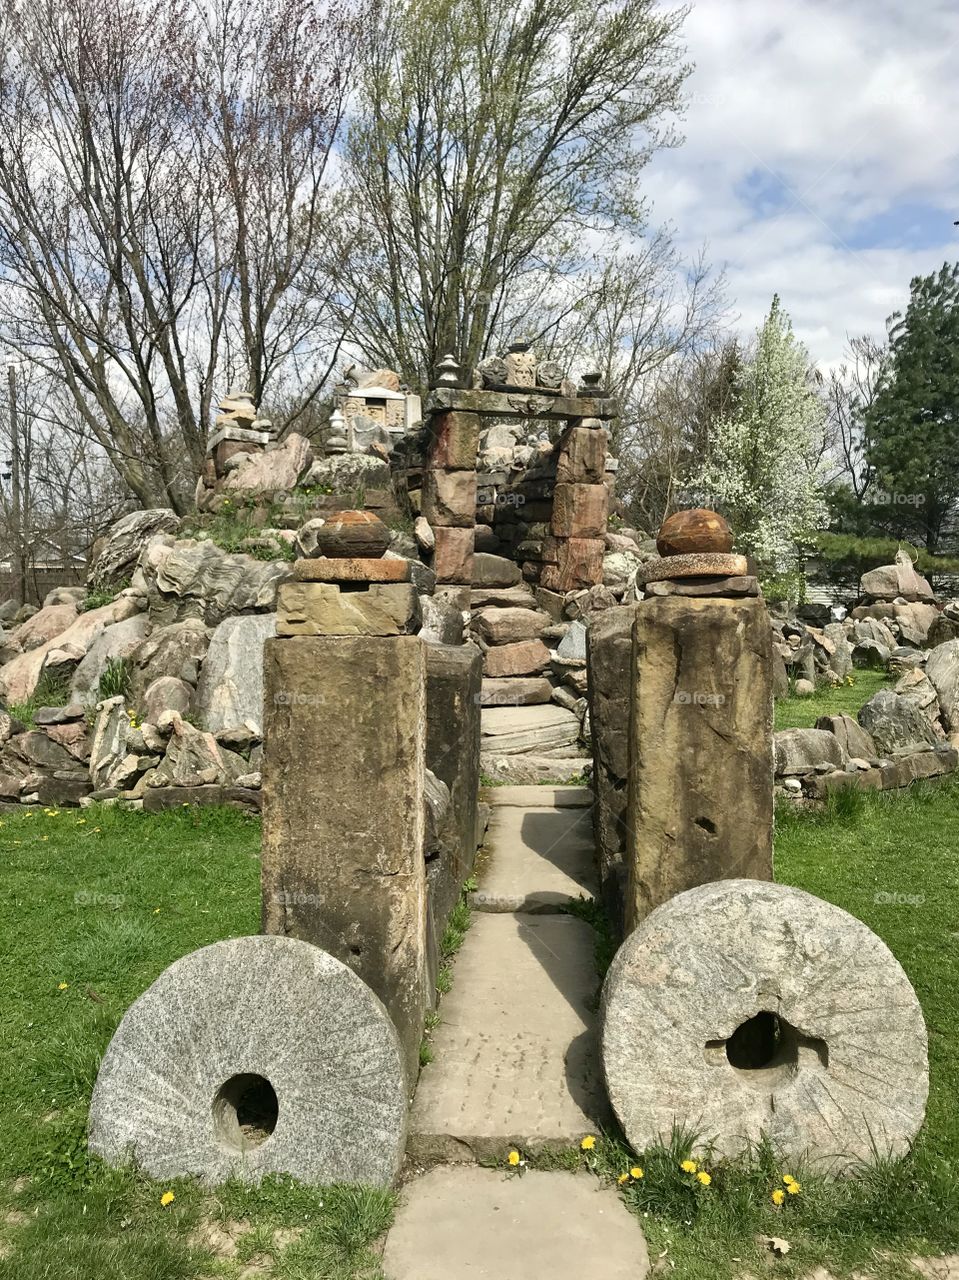 Temple of tolerance rock garden in Ohio